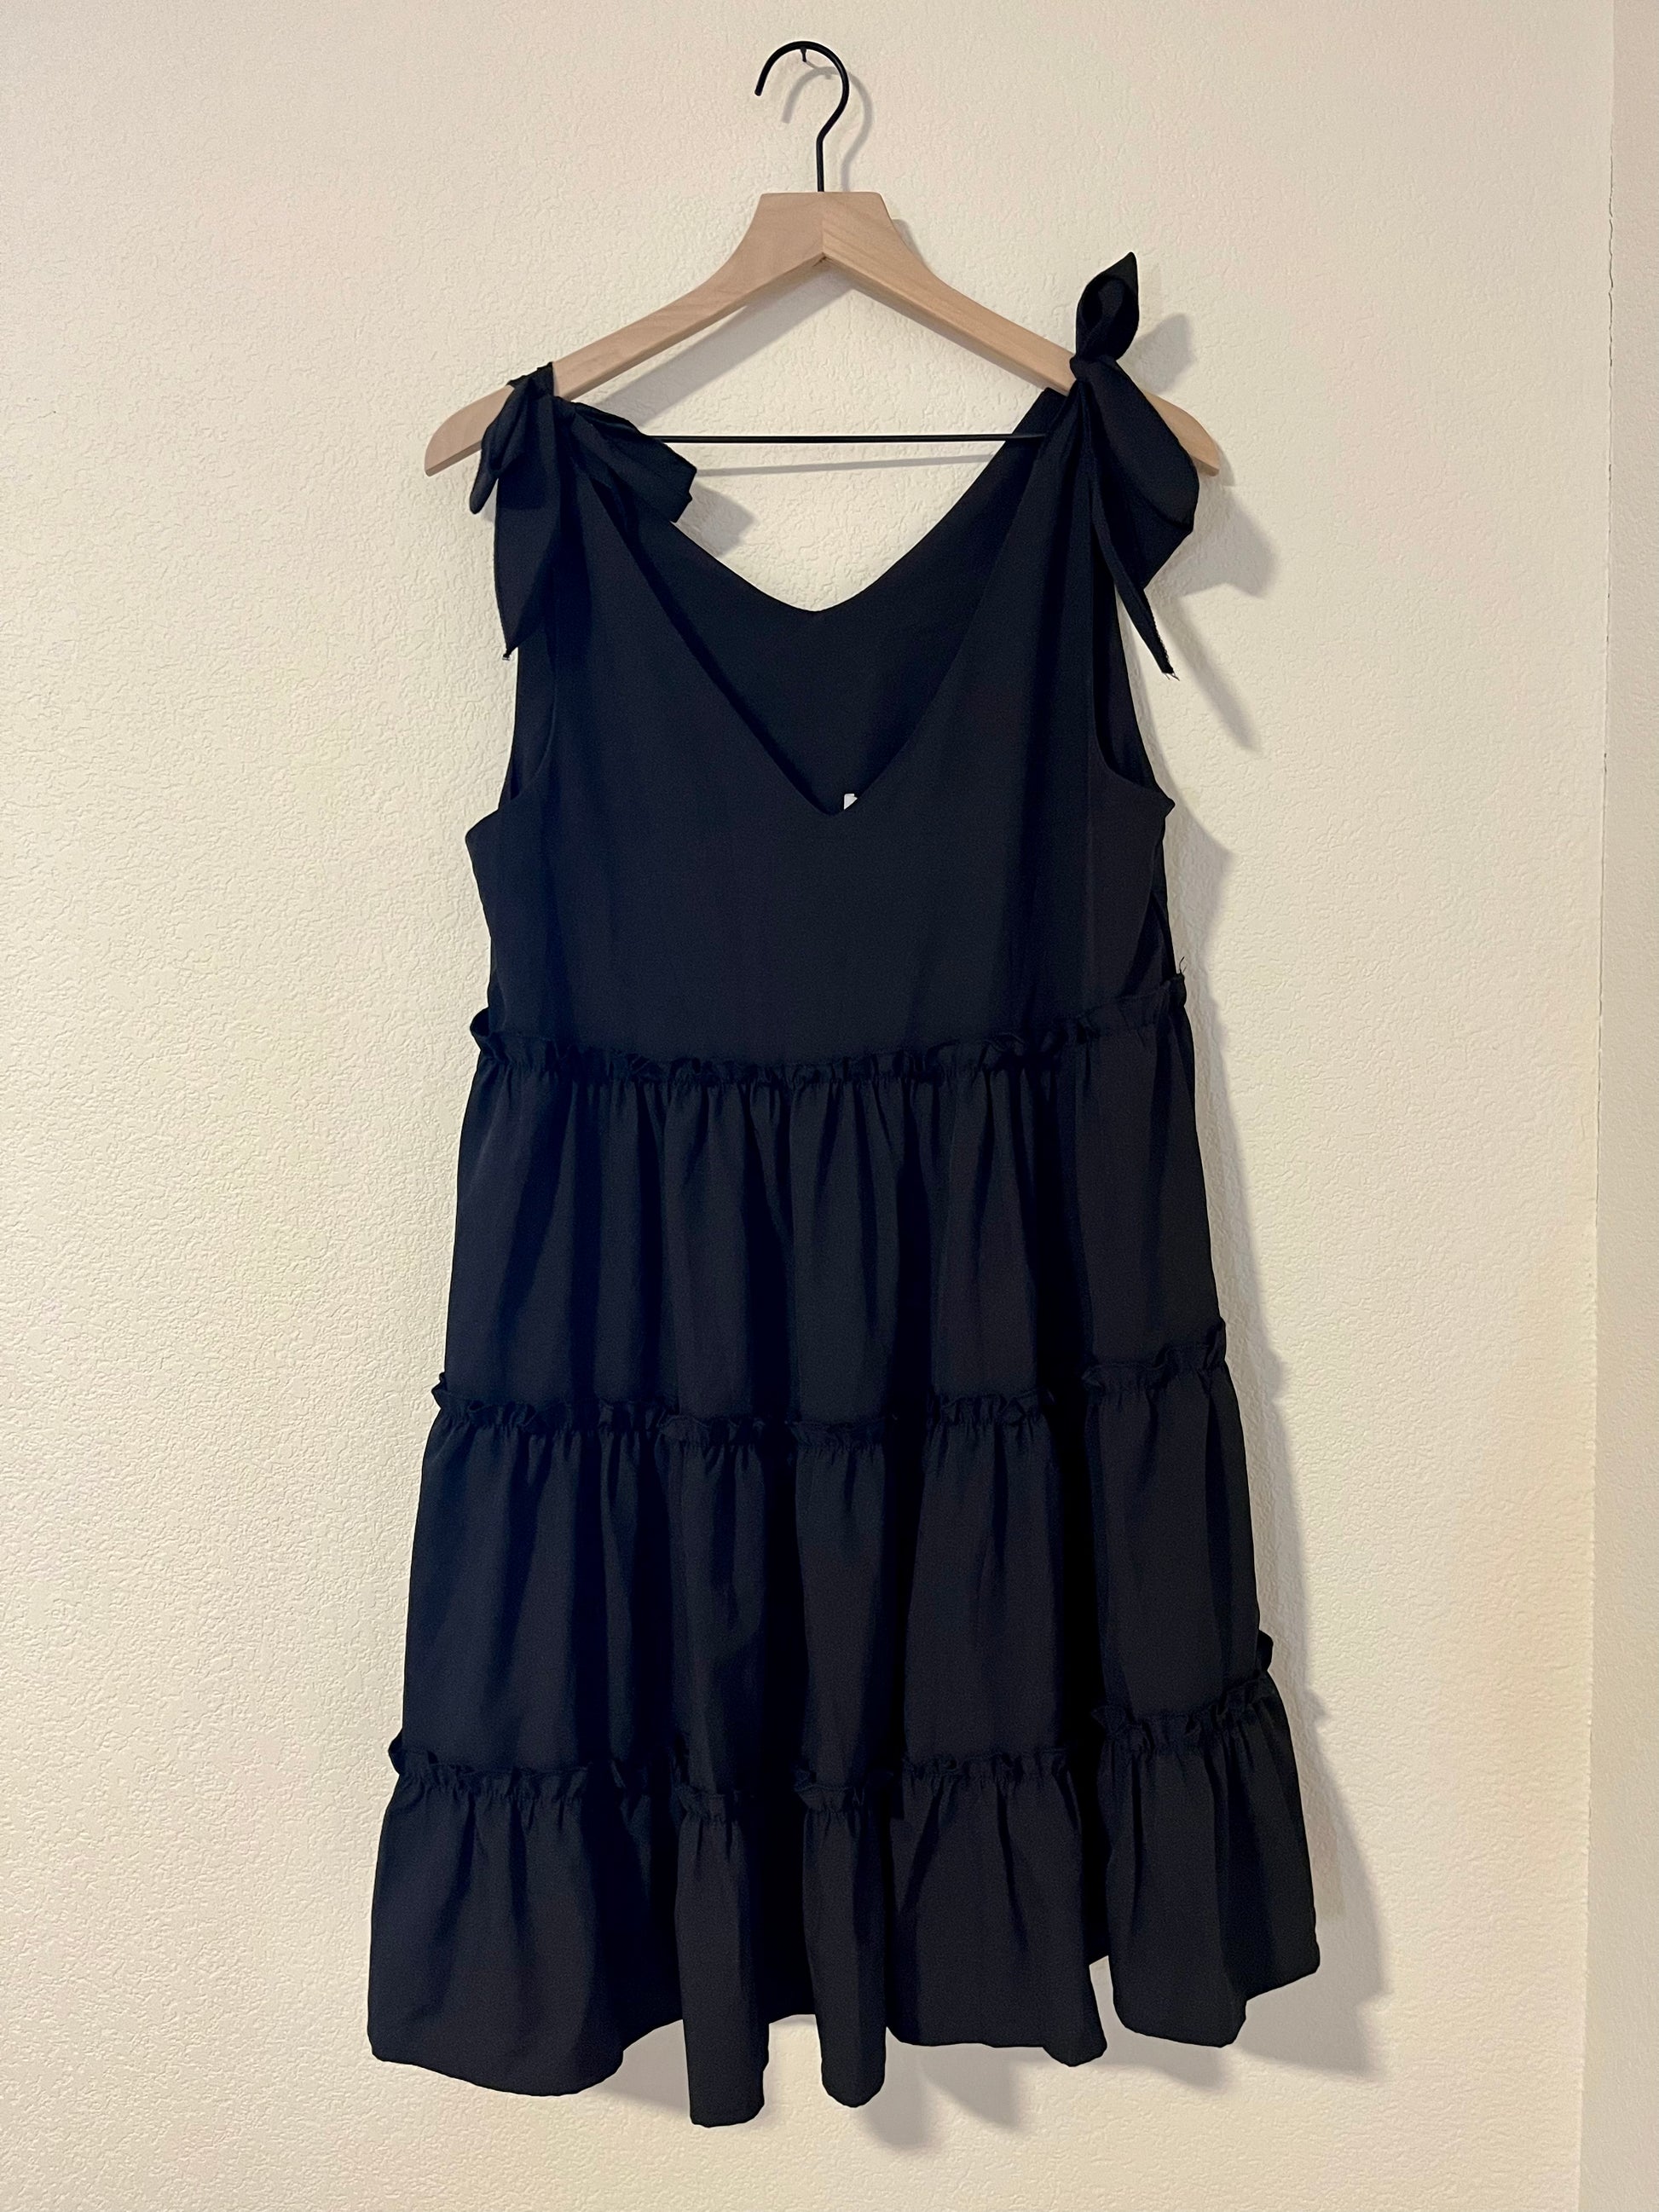 Black Dress-Dresses/Rompers-Spring Street Boutique-Spring Street Boutique, women's online fashion boutique in Palmer, Alaska